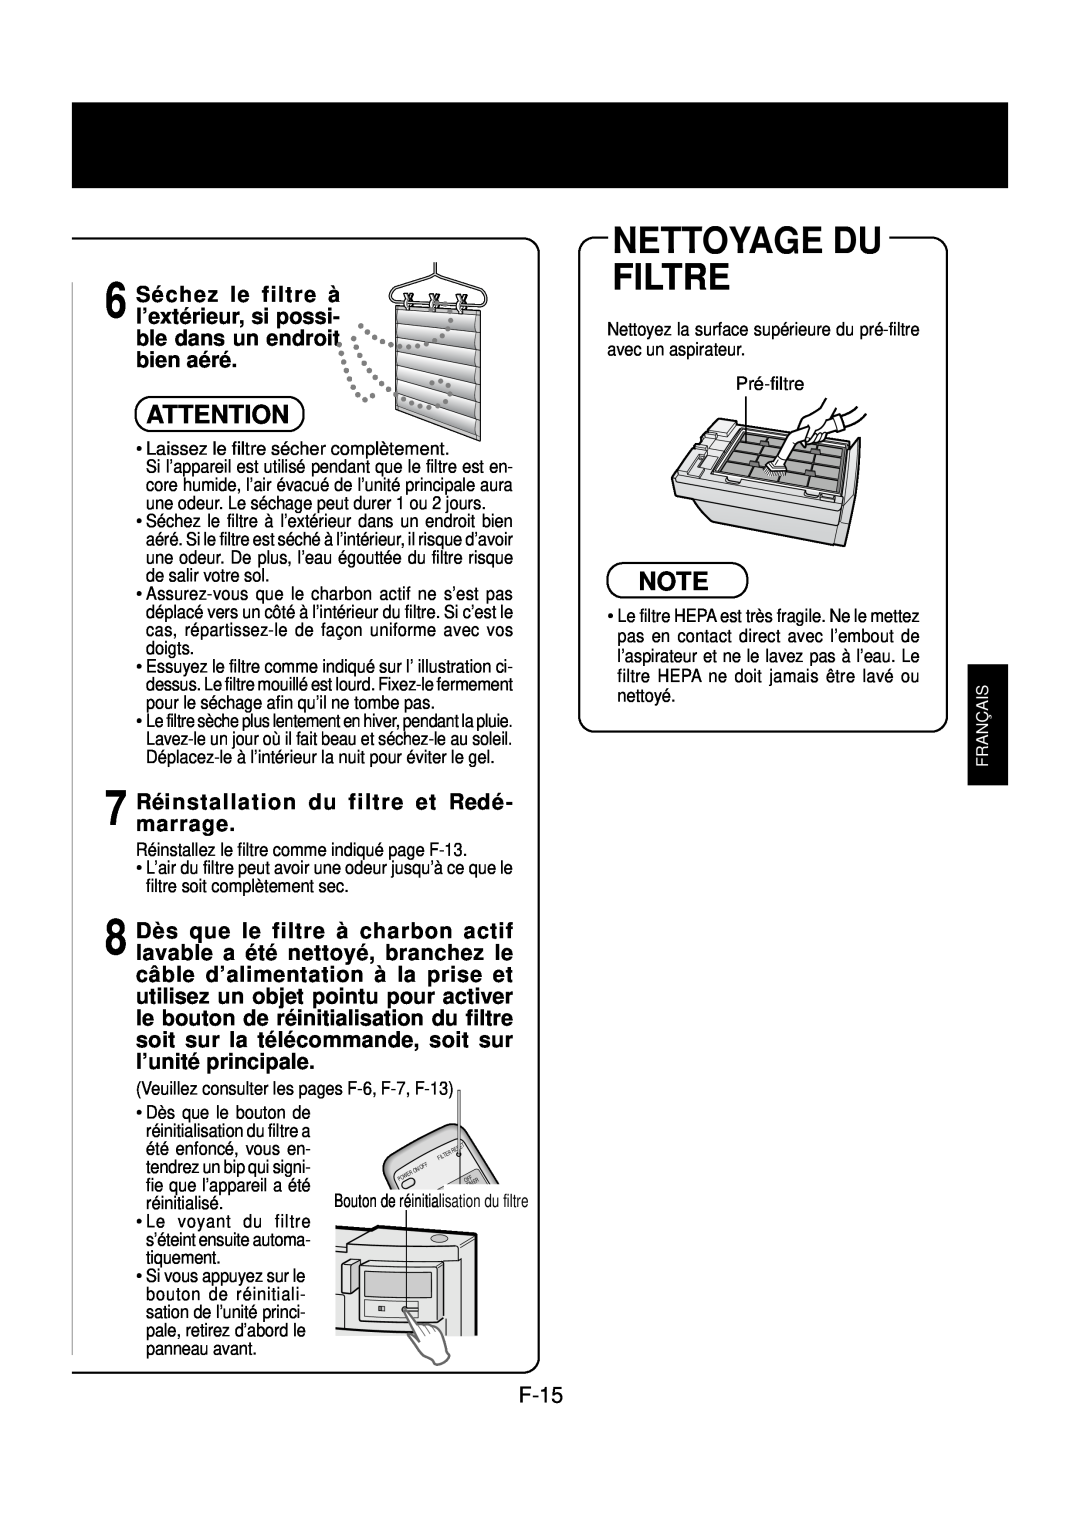 Sharp FP-N60CX operation manual Nettoyage Du Filtre, 7 Réinstallationmarrage. du filtre et Redé 